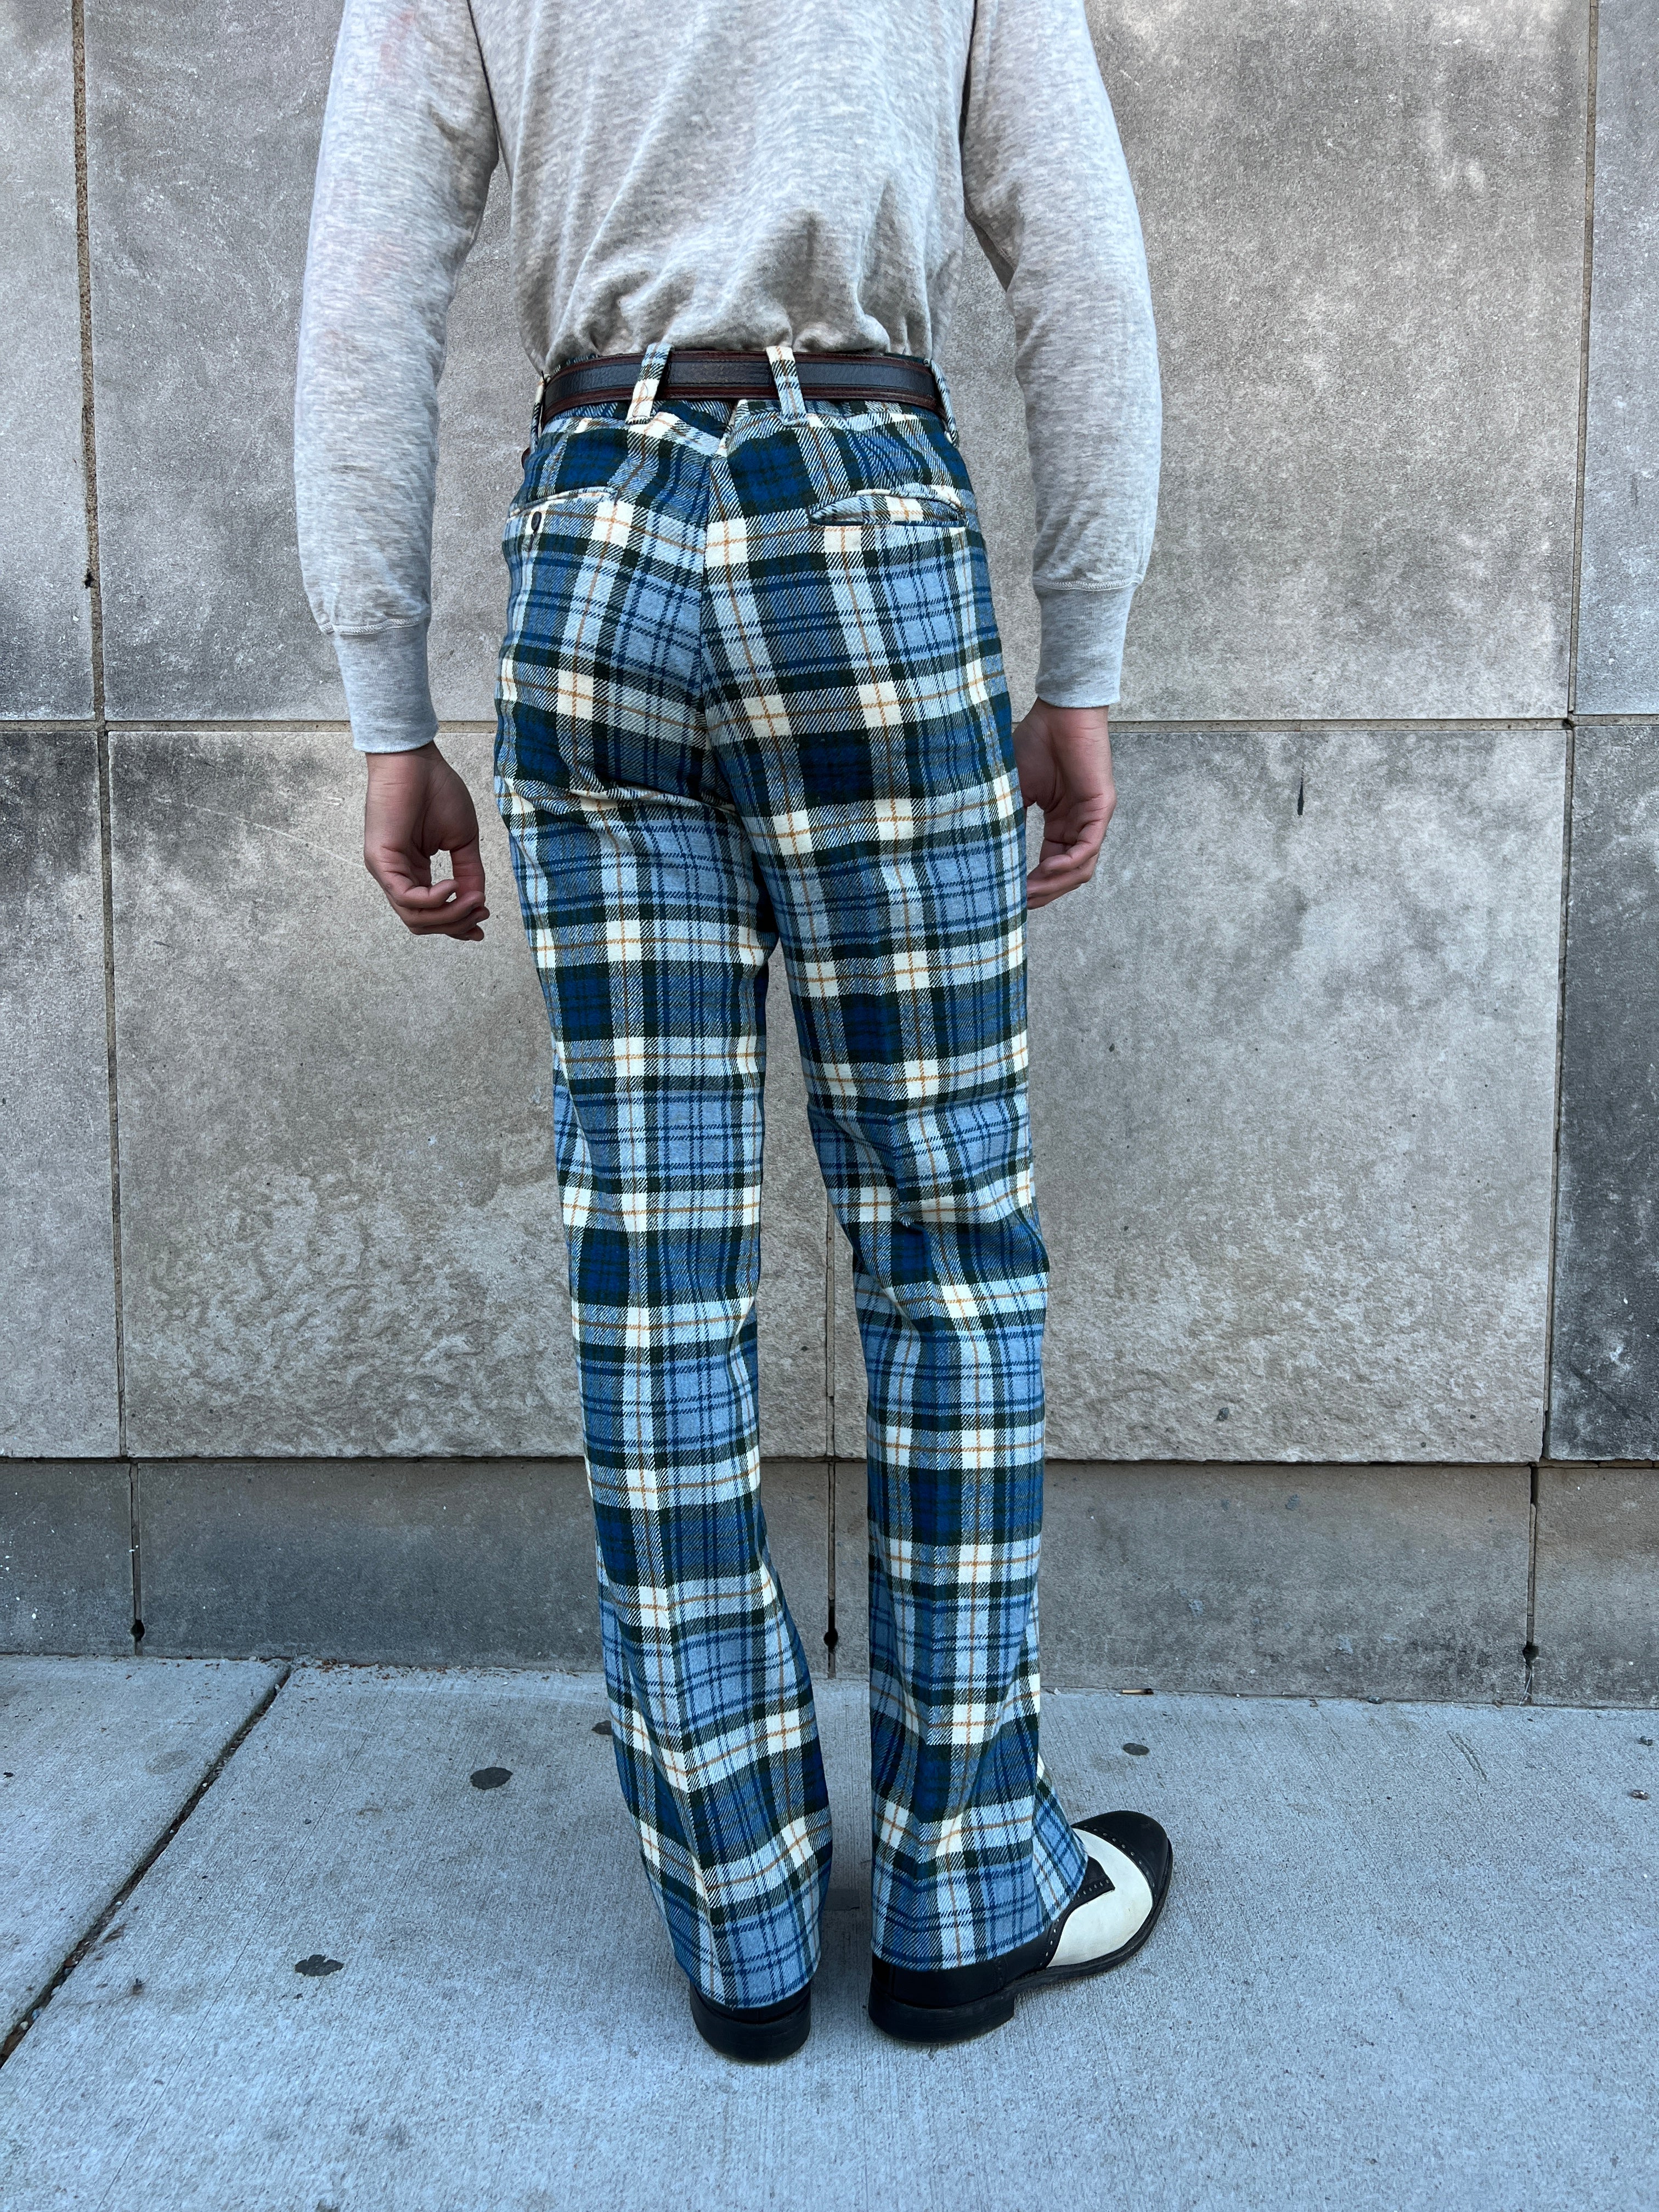 Elastic Stretchy Striped Plaid Pants | Plaid pants, Plaid pants women, Plaid  pants outfit